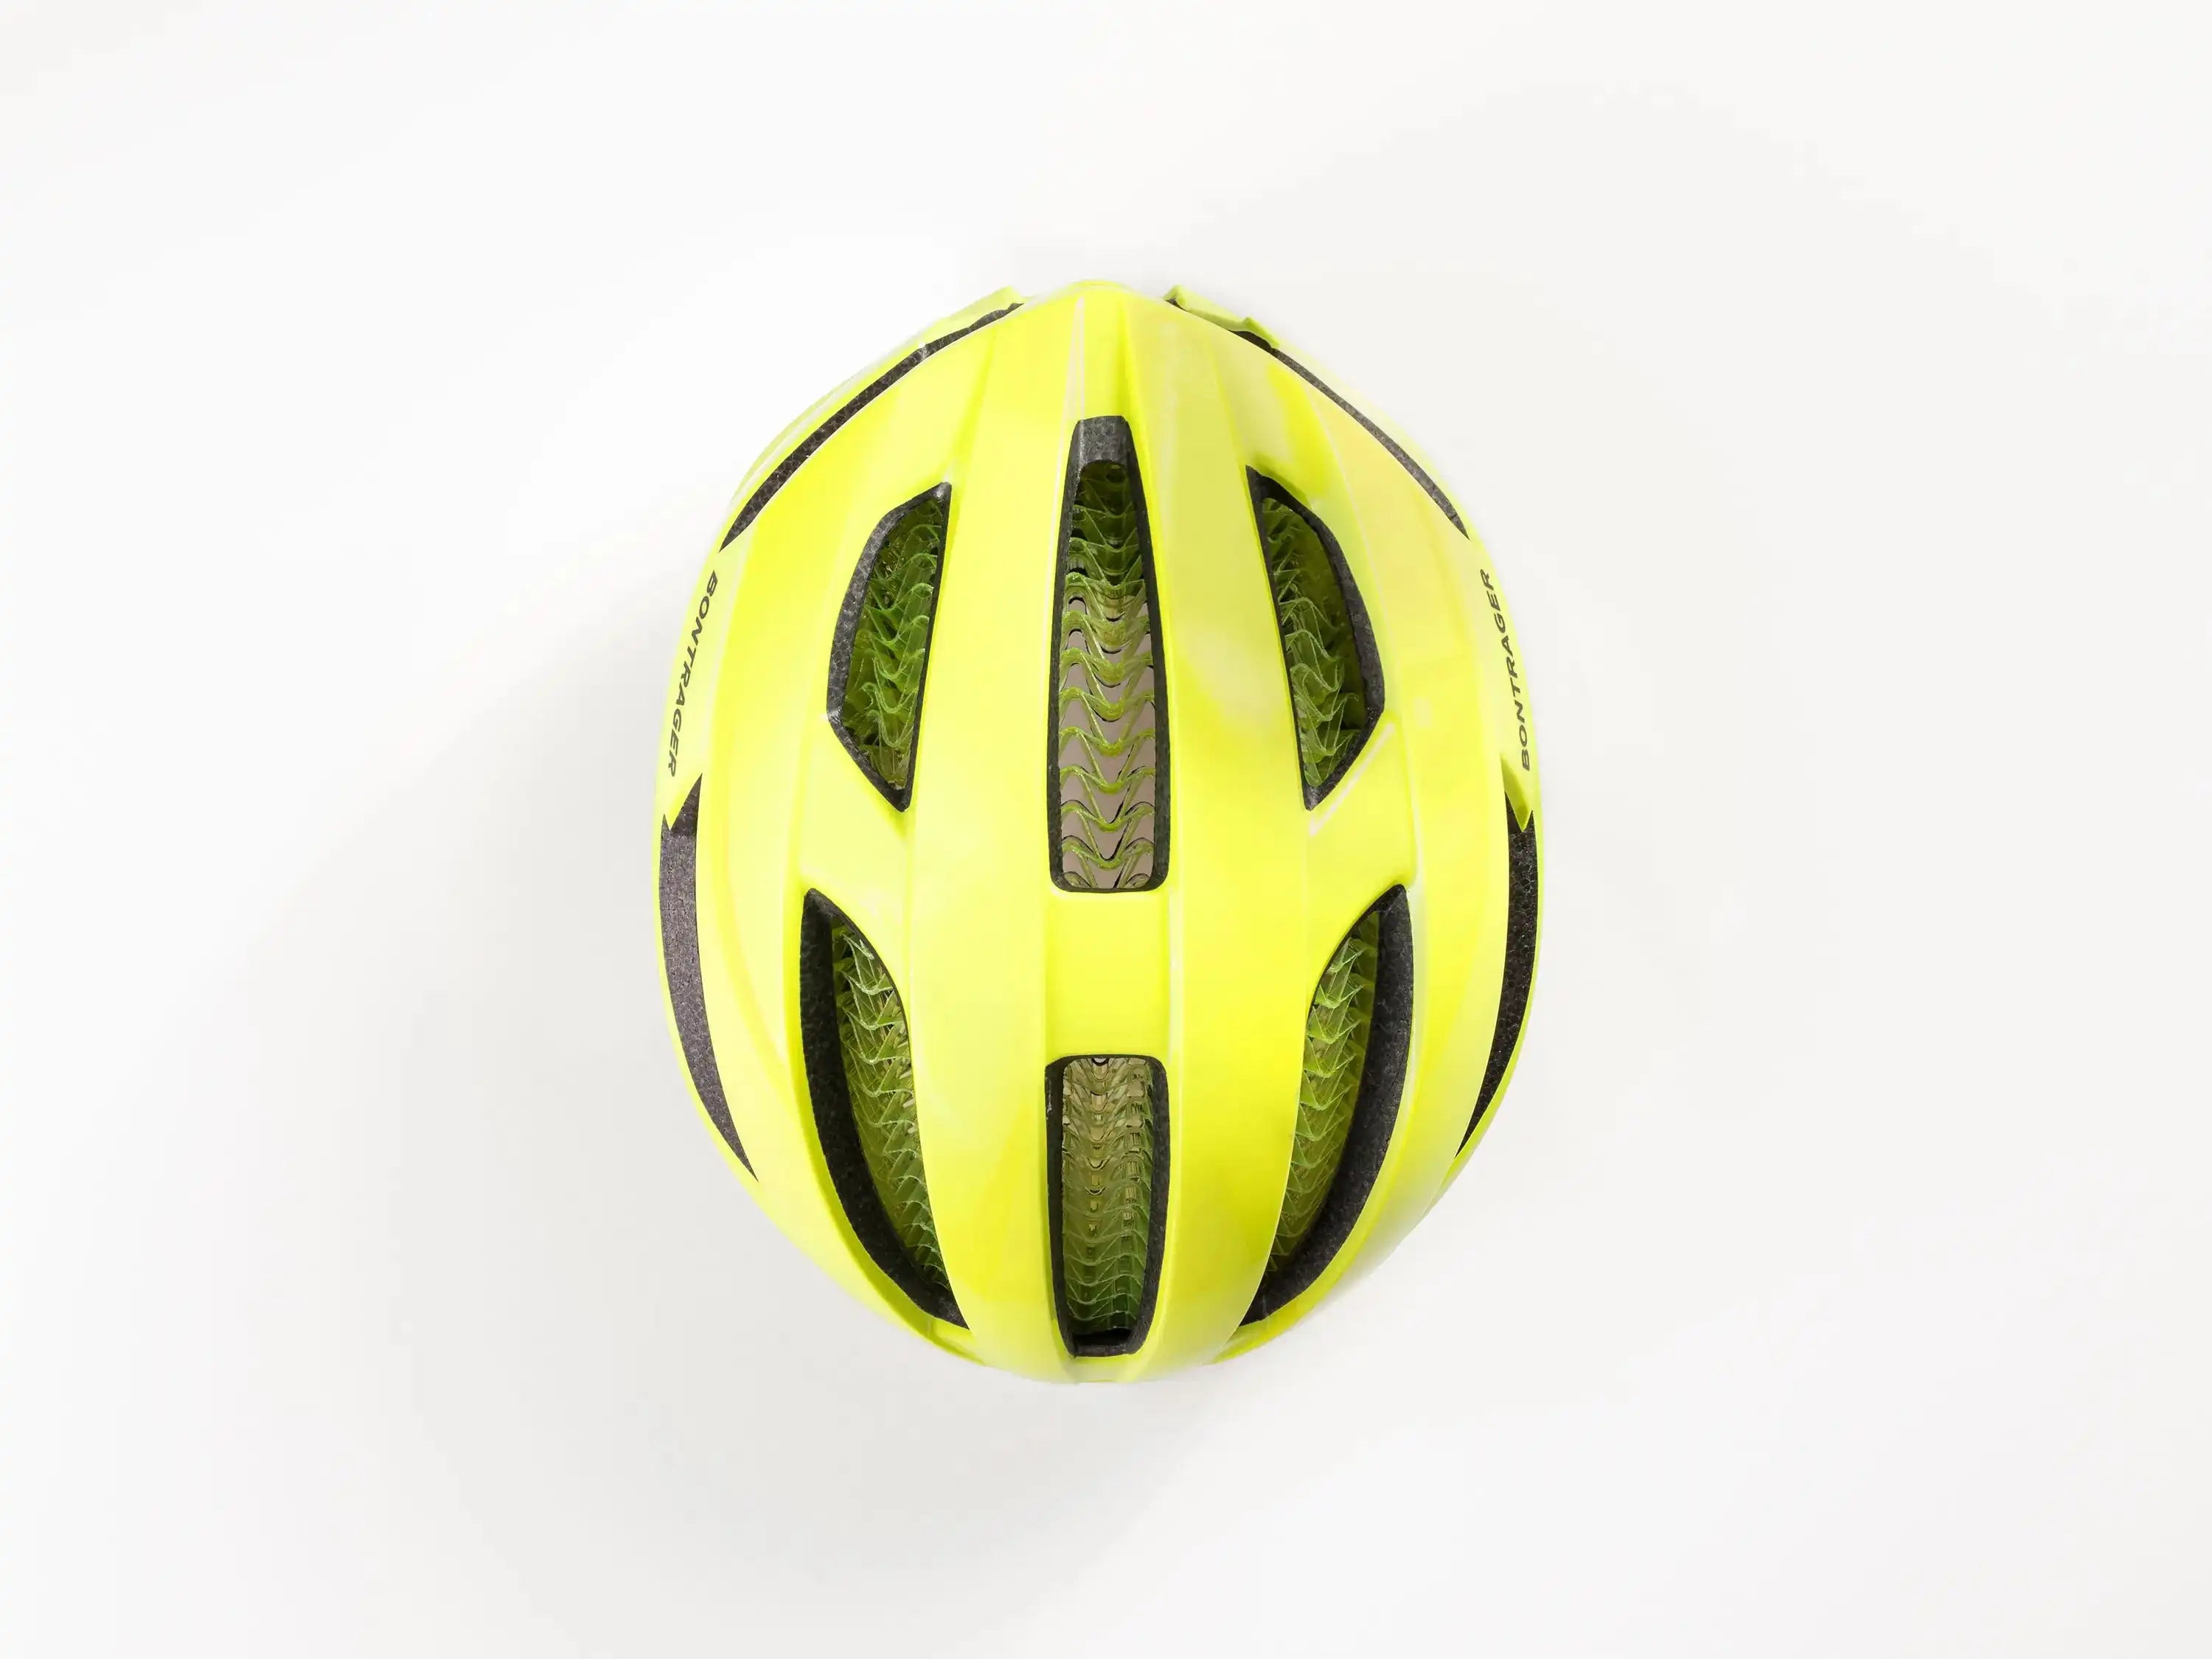 Helmet Bontrager Specter WaveCel Wheels Bikes